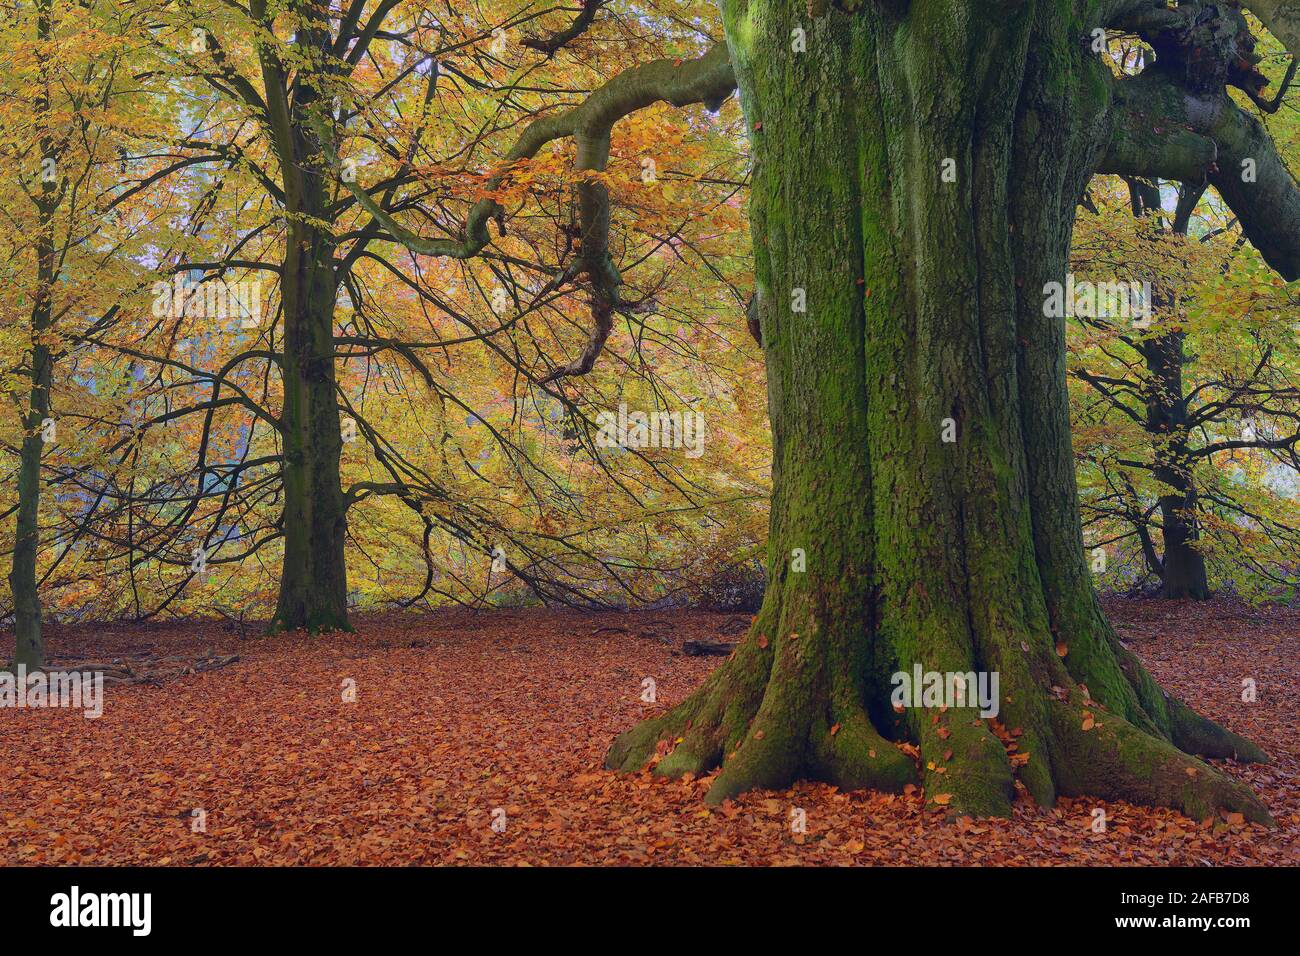 Bemooster Stamm einer alten Buche (Fagus) im Herbst, verfaerbte Blaetter im Gegenlicht, Urwald Sababurg, Hessen, Deutschland, Europa Stock Photo